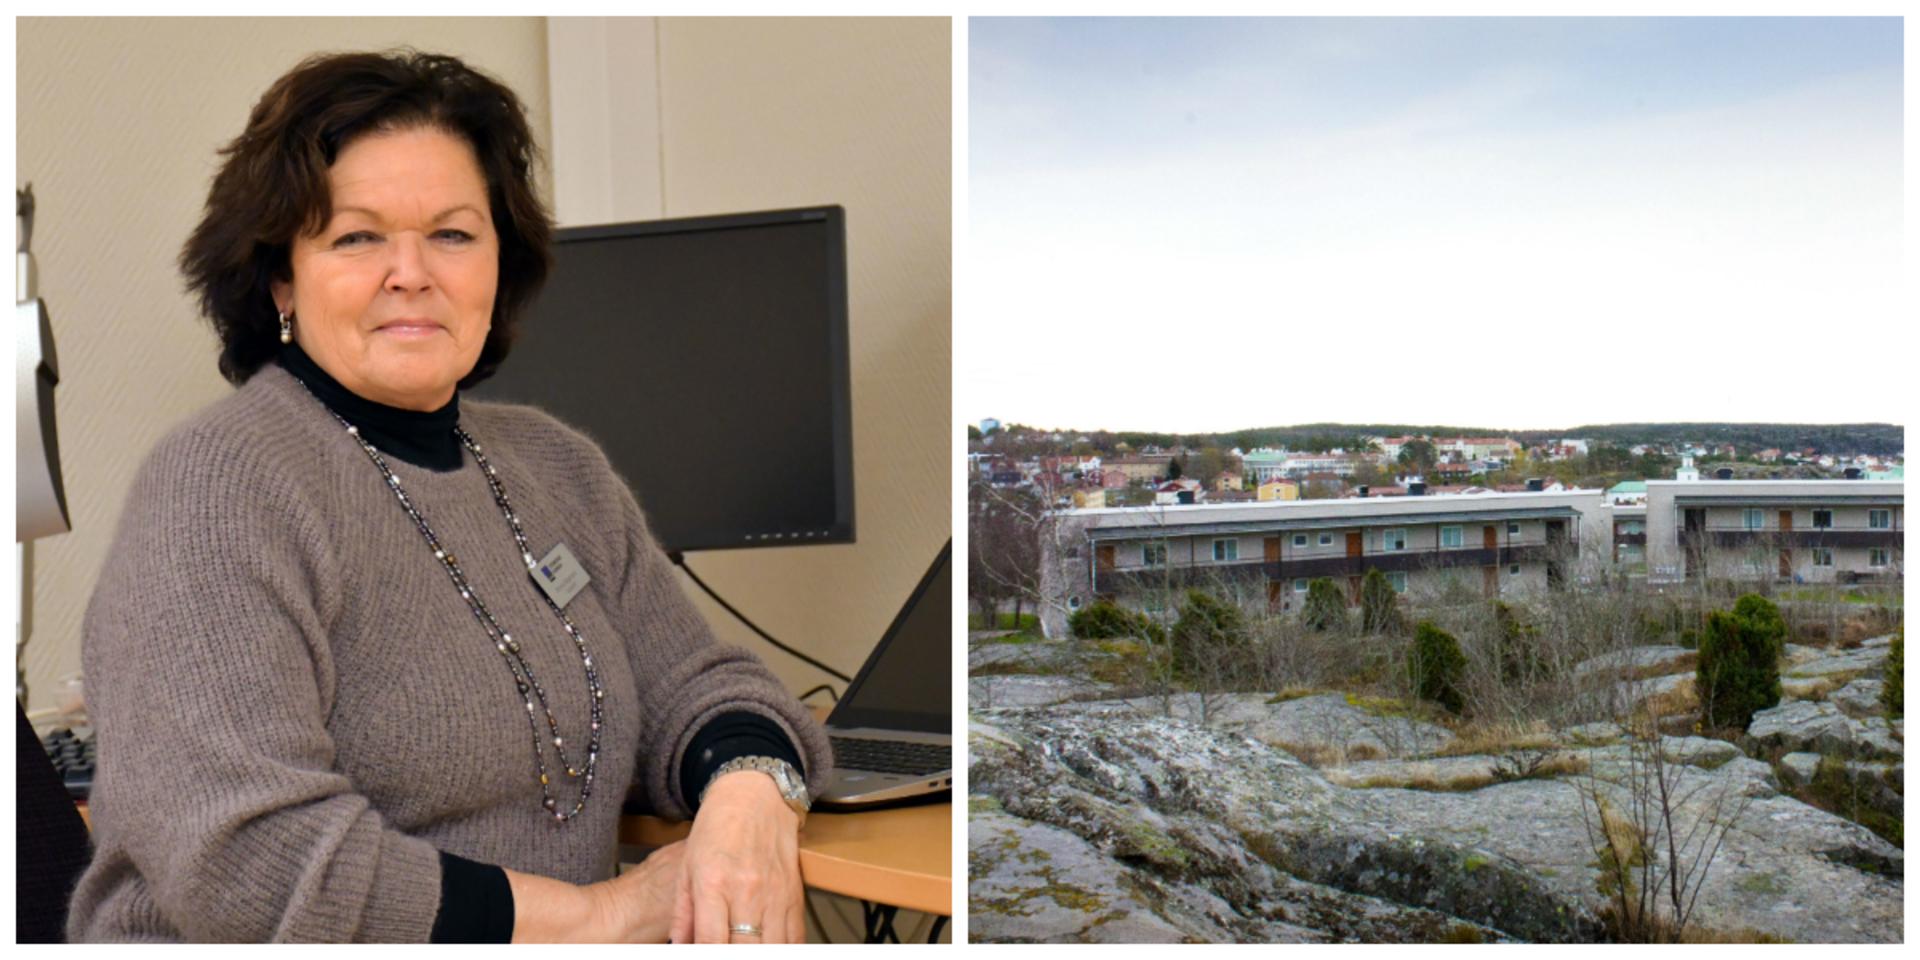 I Strömstad gör kommunen extra ansträngningar för att nå nyanlända och personer med annat huvudspråk än svenska med information om coronasmittan, berättar socialchef Monica Birgersson.